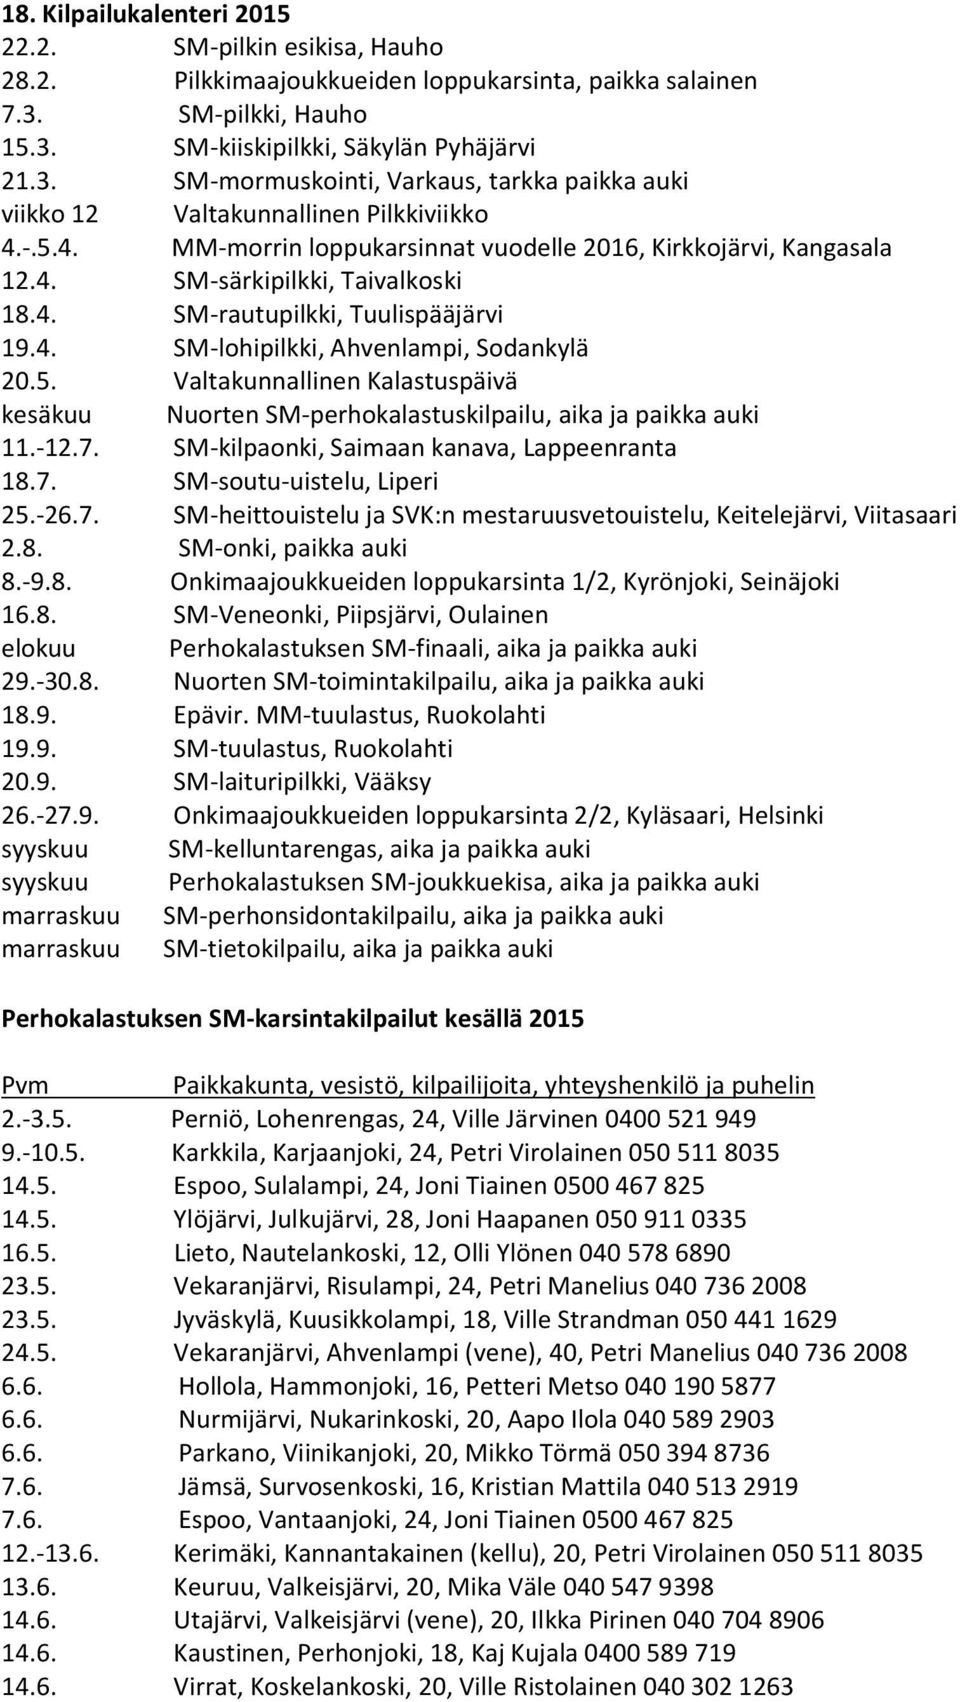 -.5.4. MM-morrin loppukarsinnat vuodelle 2016, Kirkkojärvi, Kangasala 12.4. SM-särkipilkki, Taivalkoski 18.4. SM-rautupilkki, Tuulispääjärvi 19.4. SM-lohipilkki, Ahvenlampi, Sodankylä 20.5. Valtakunnallinen Kalastuspäivä kesäkuu Nuorten SM-perhokalastuskilpailu, aika ja paikka auki 11.